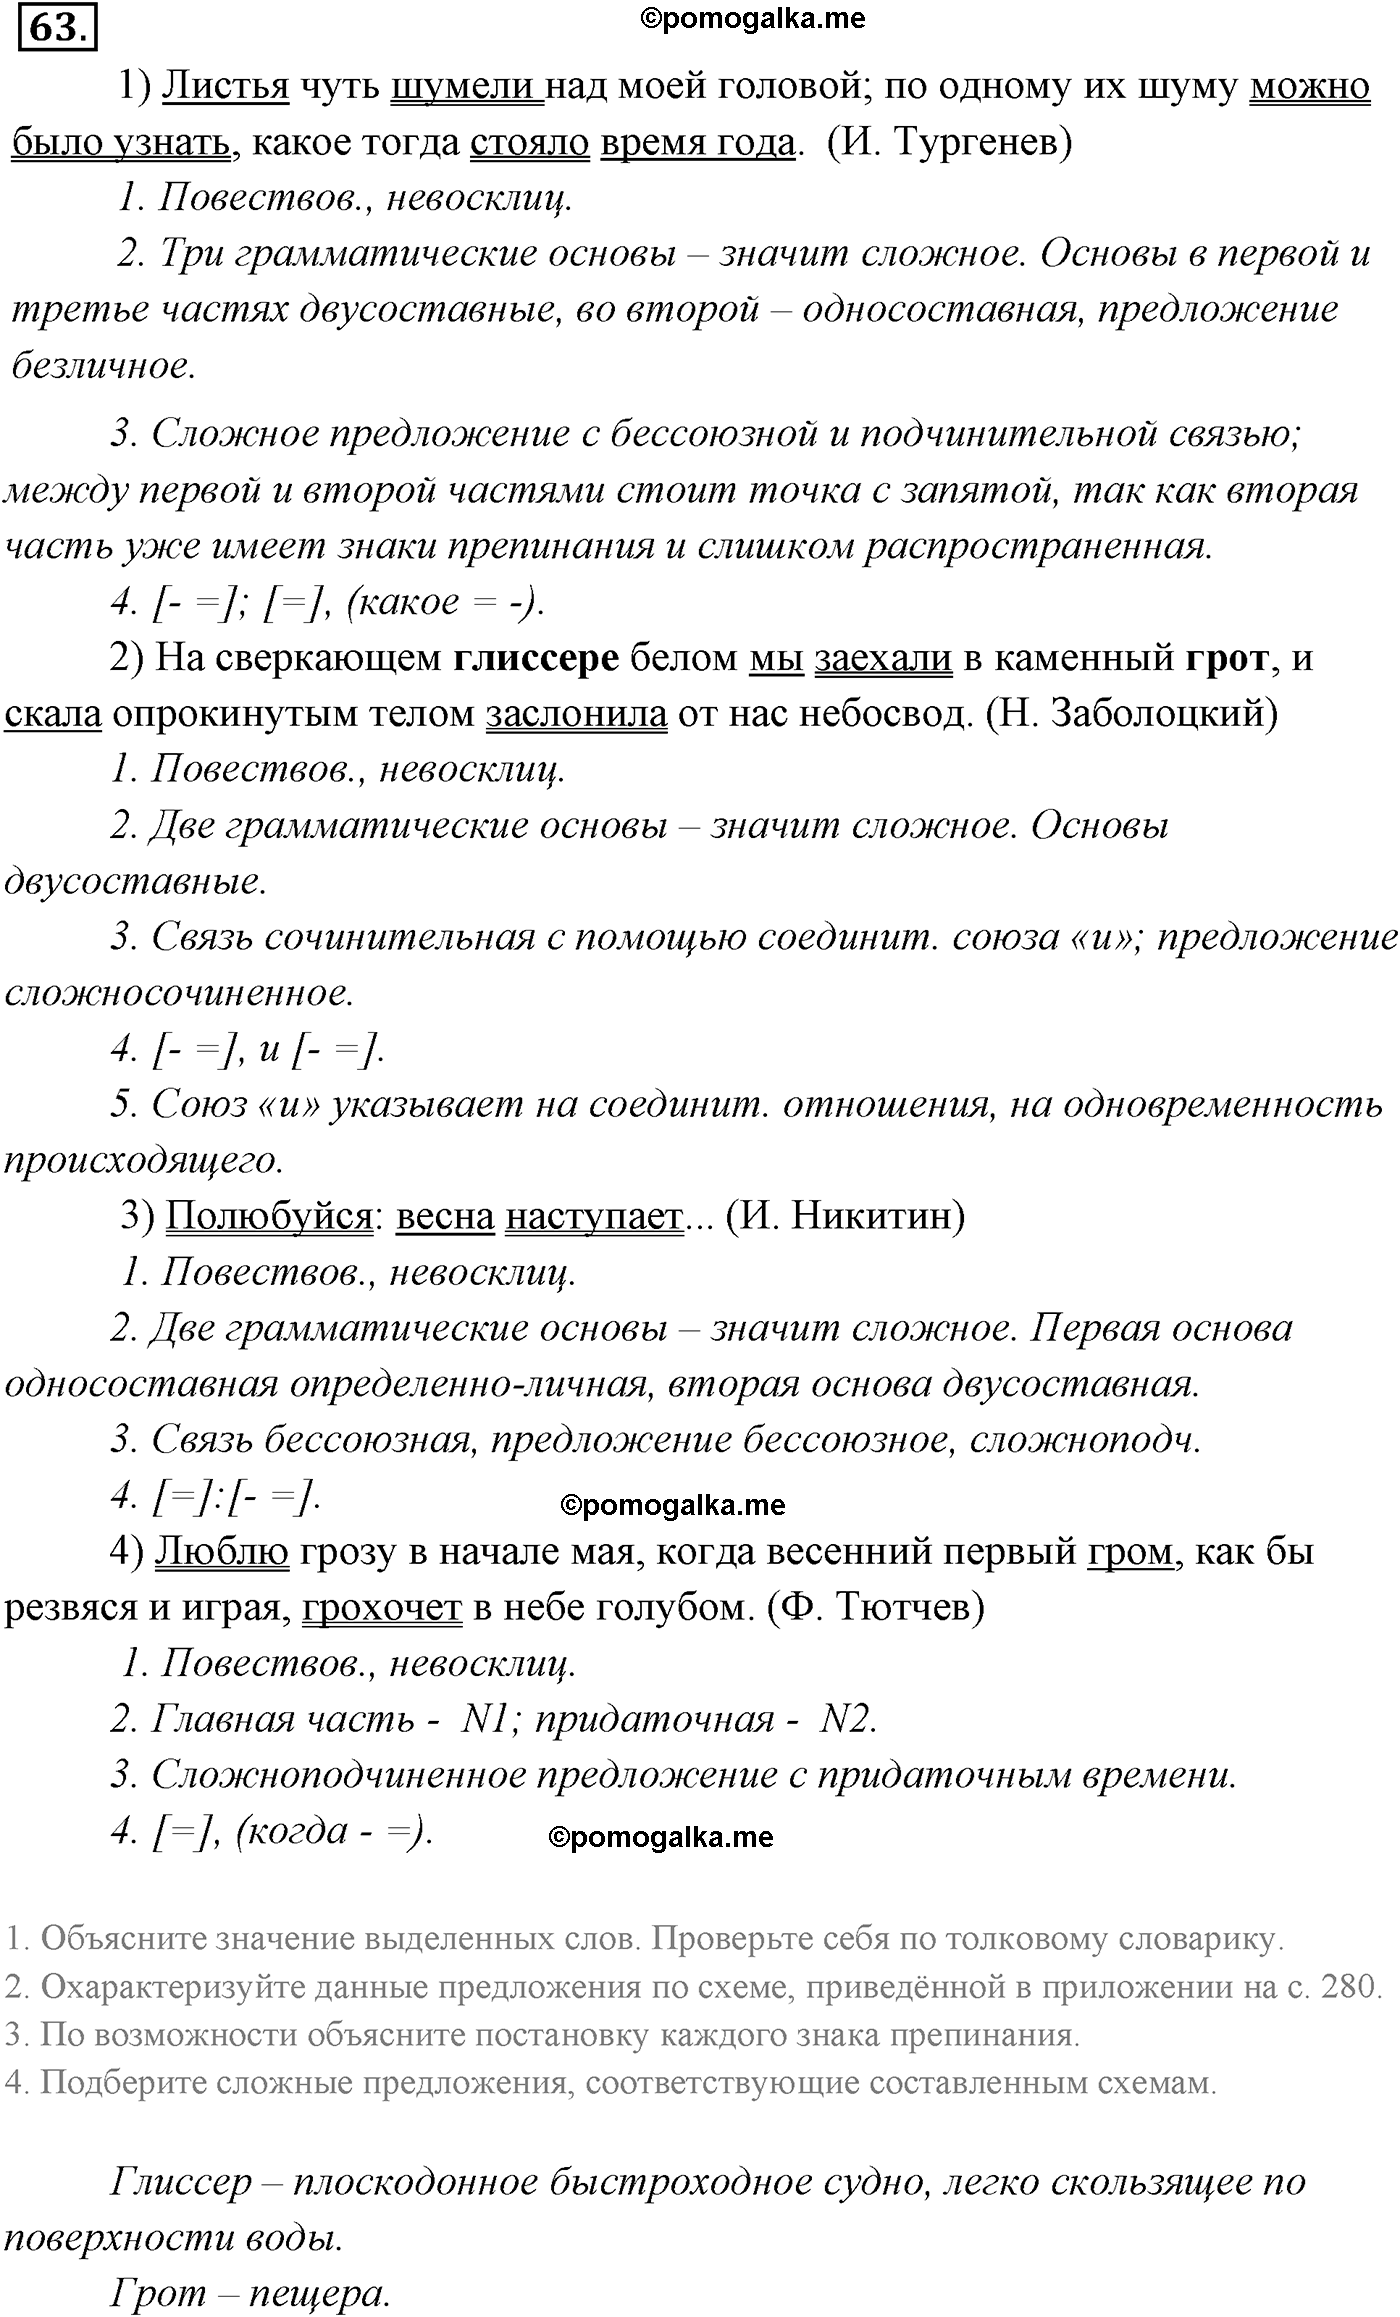 упражнение №63 русский язык 9 класс Разумовская